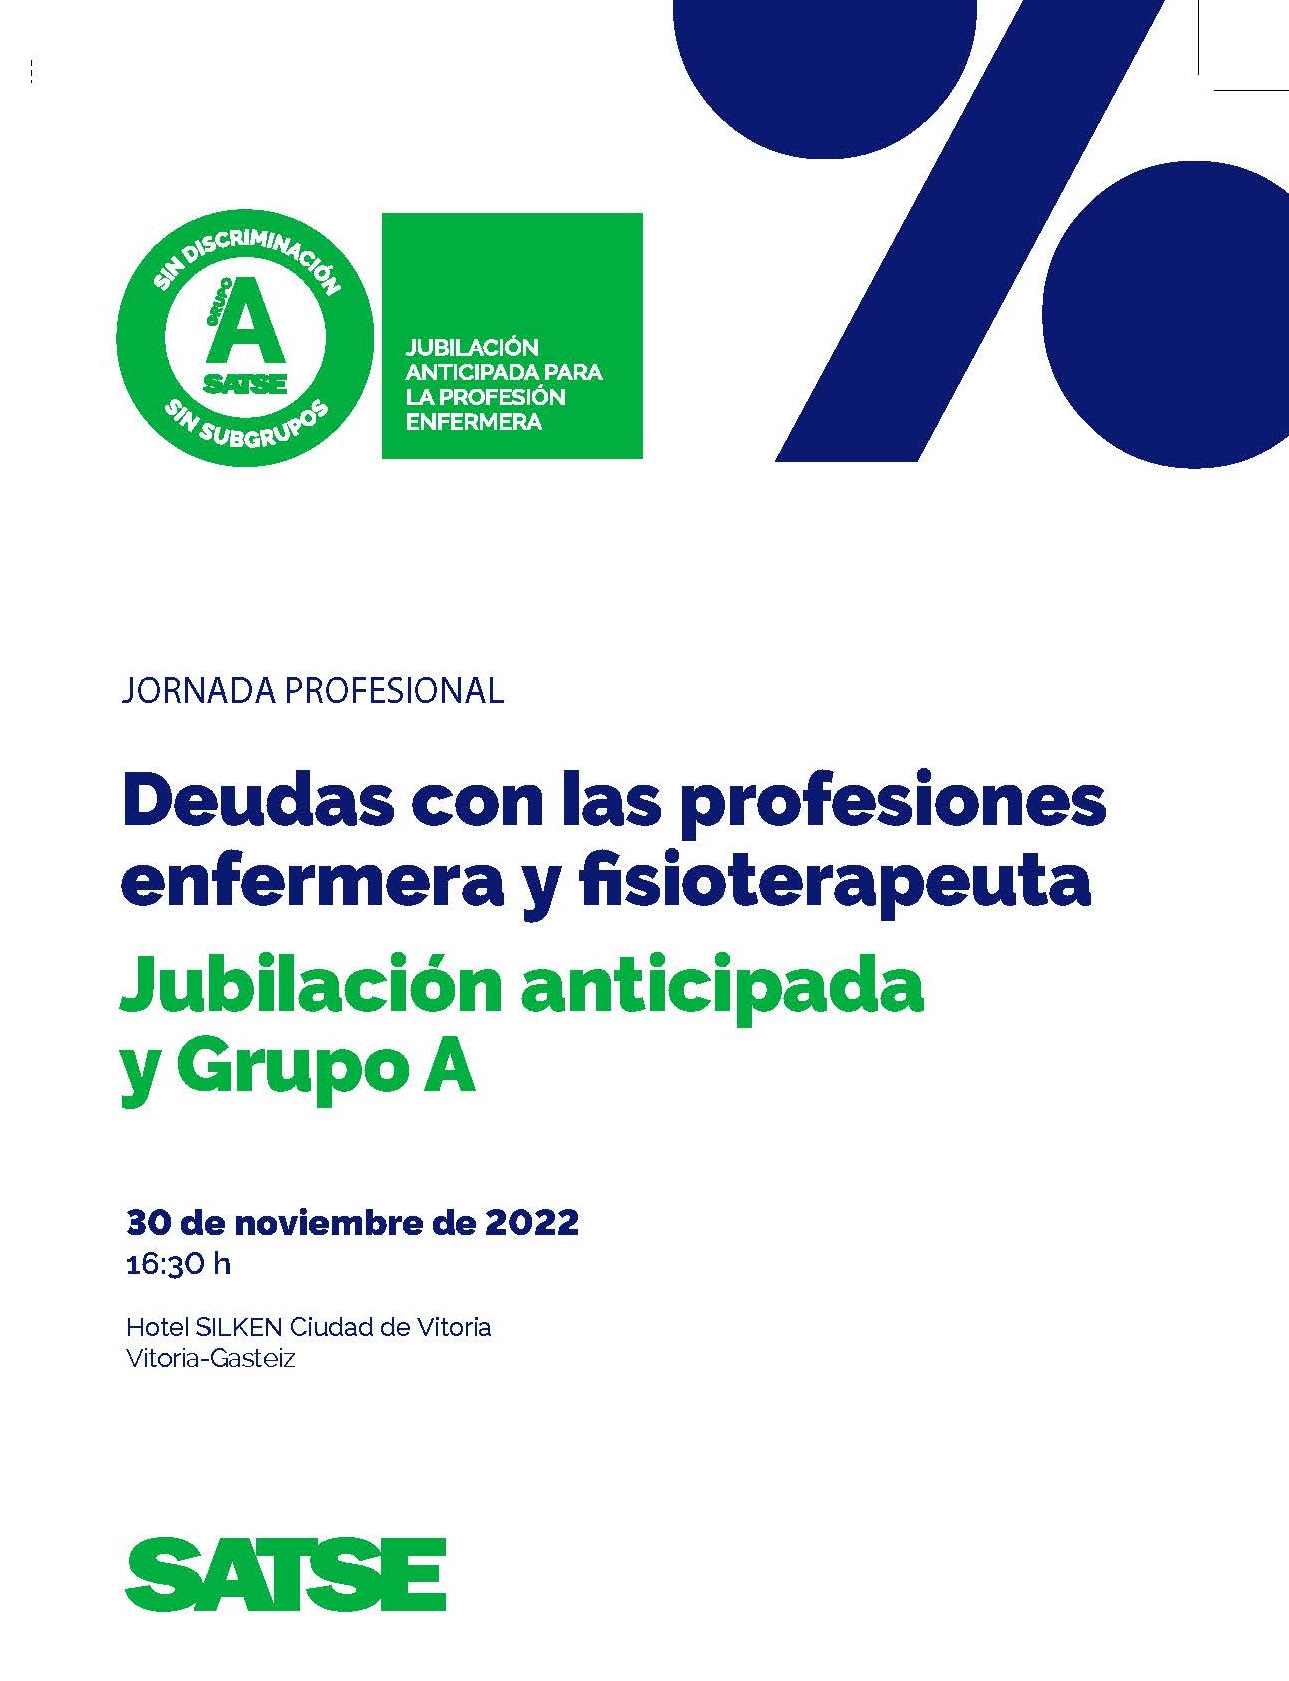 JORNADA PROFESIONAL: DEUDAS CON LA PROFESION GRUPO A Y JUBILACIÓN ANTICIPADA